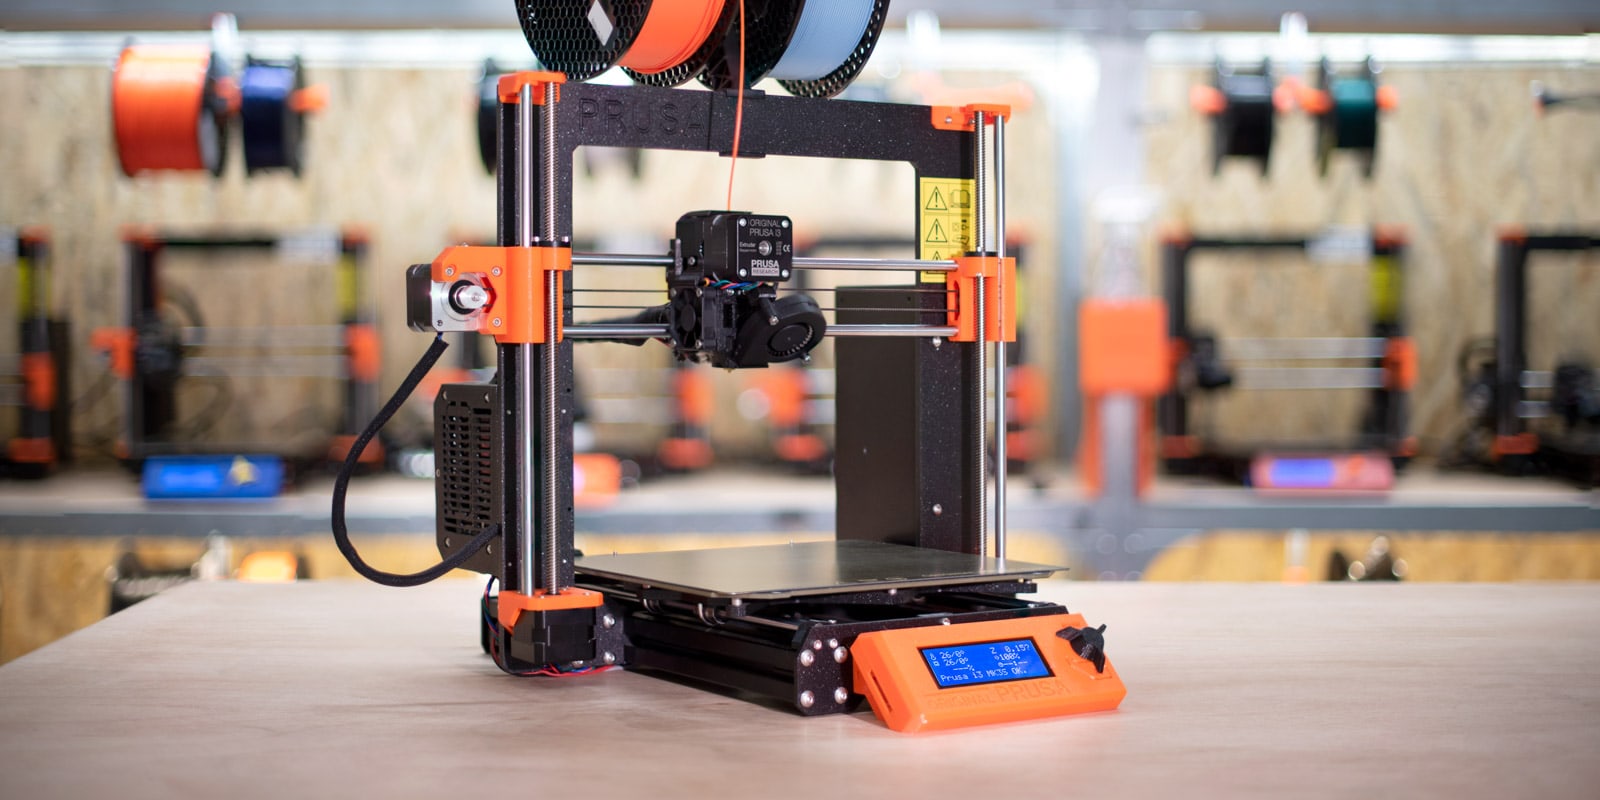 Le migliori stampanti 3D sotto i € 300 - Guida all'acquisto - Guide - Stampa  3D forum